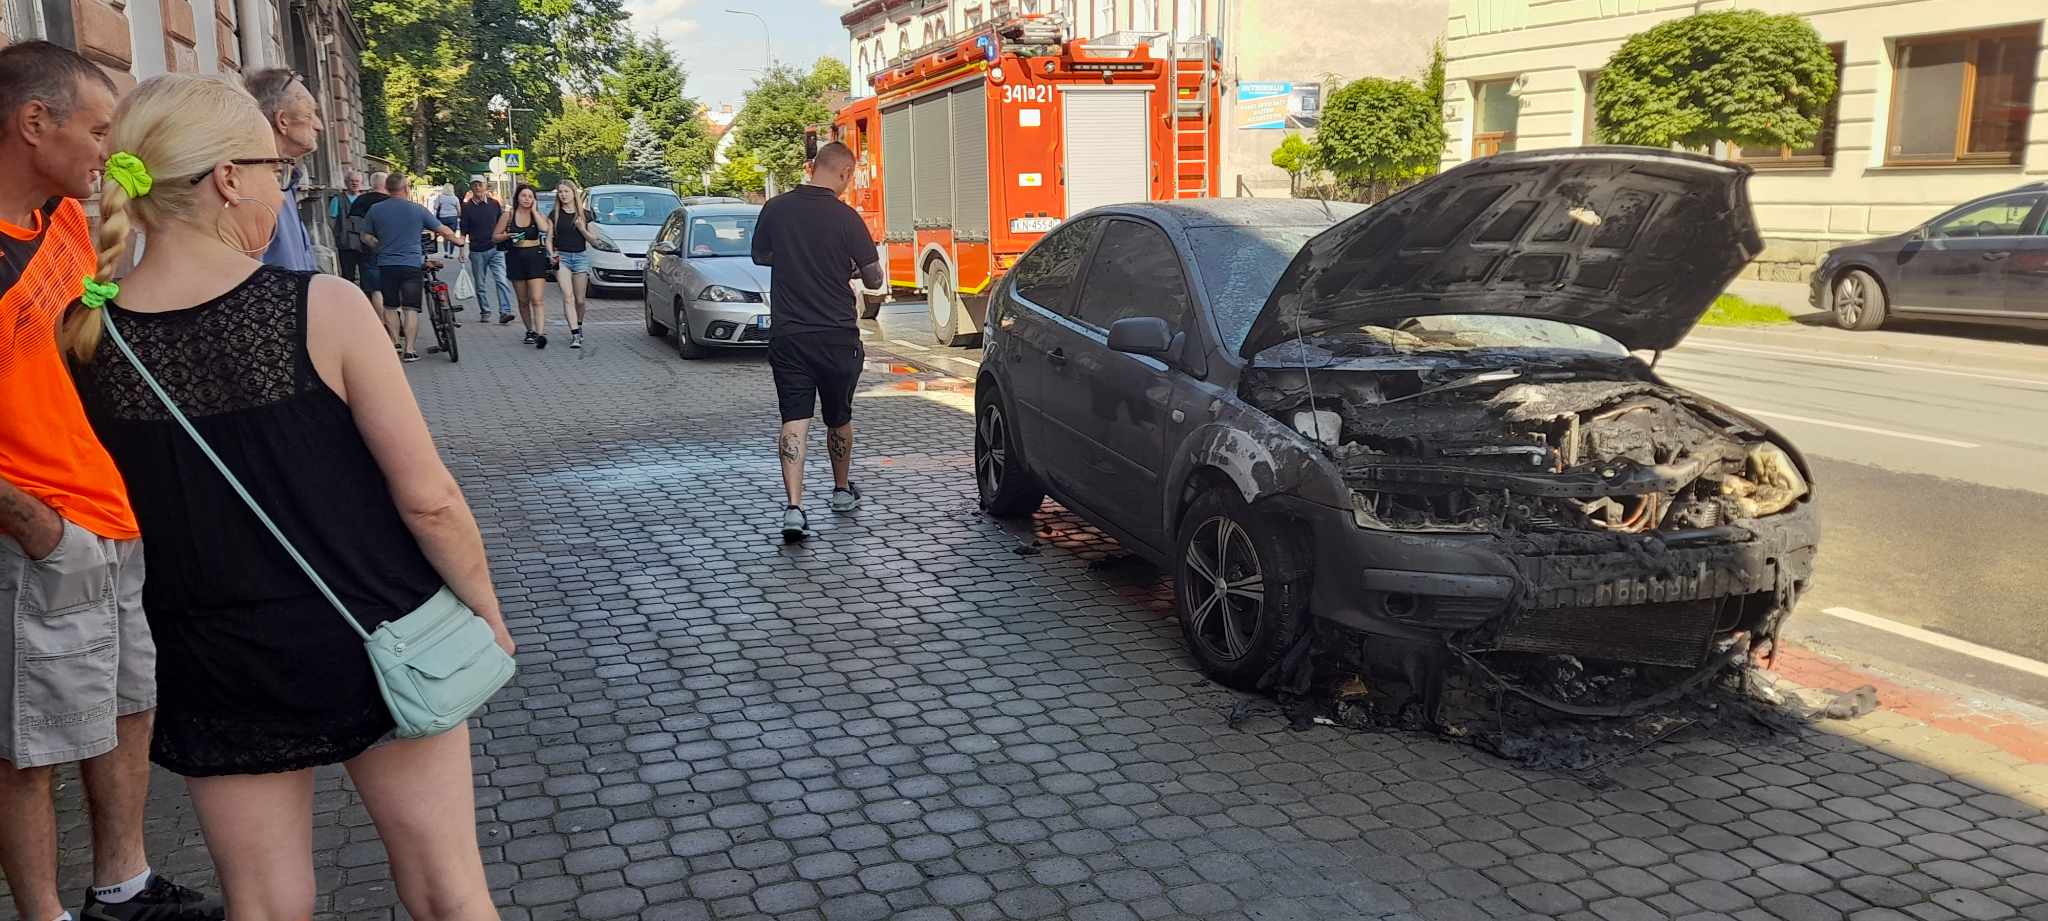 Nowy Sącz, ulica Grodzka, pożar samochodu